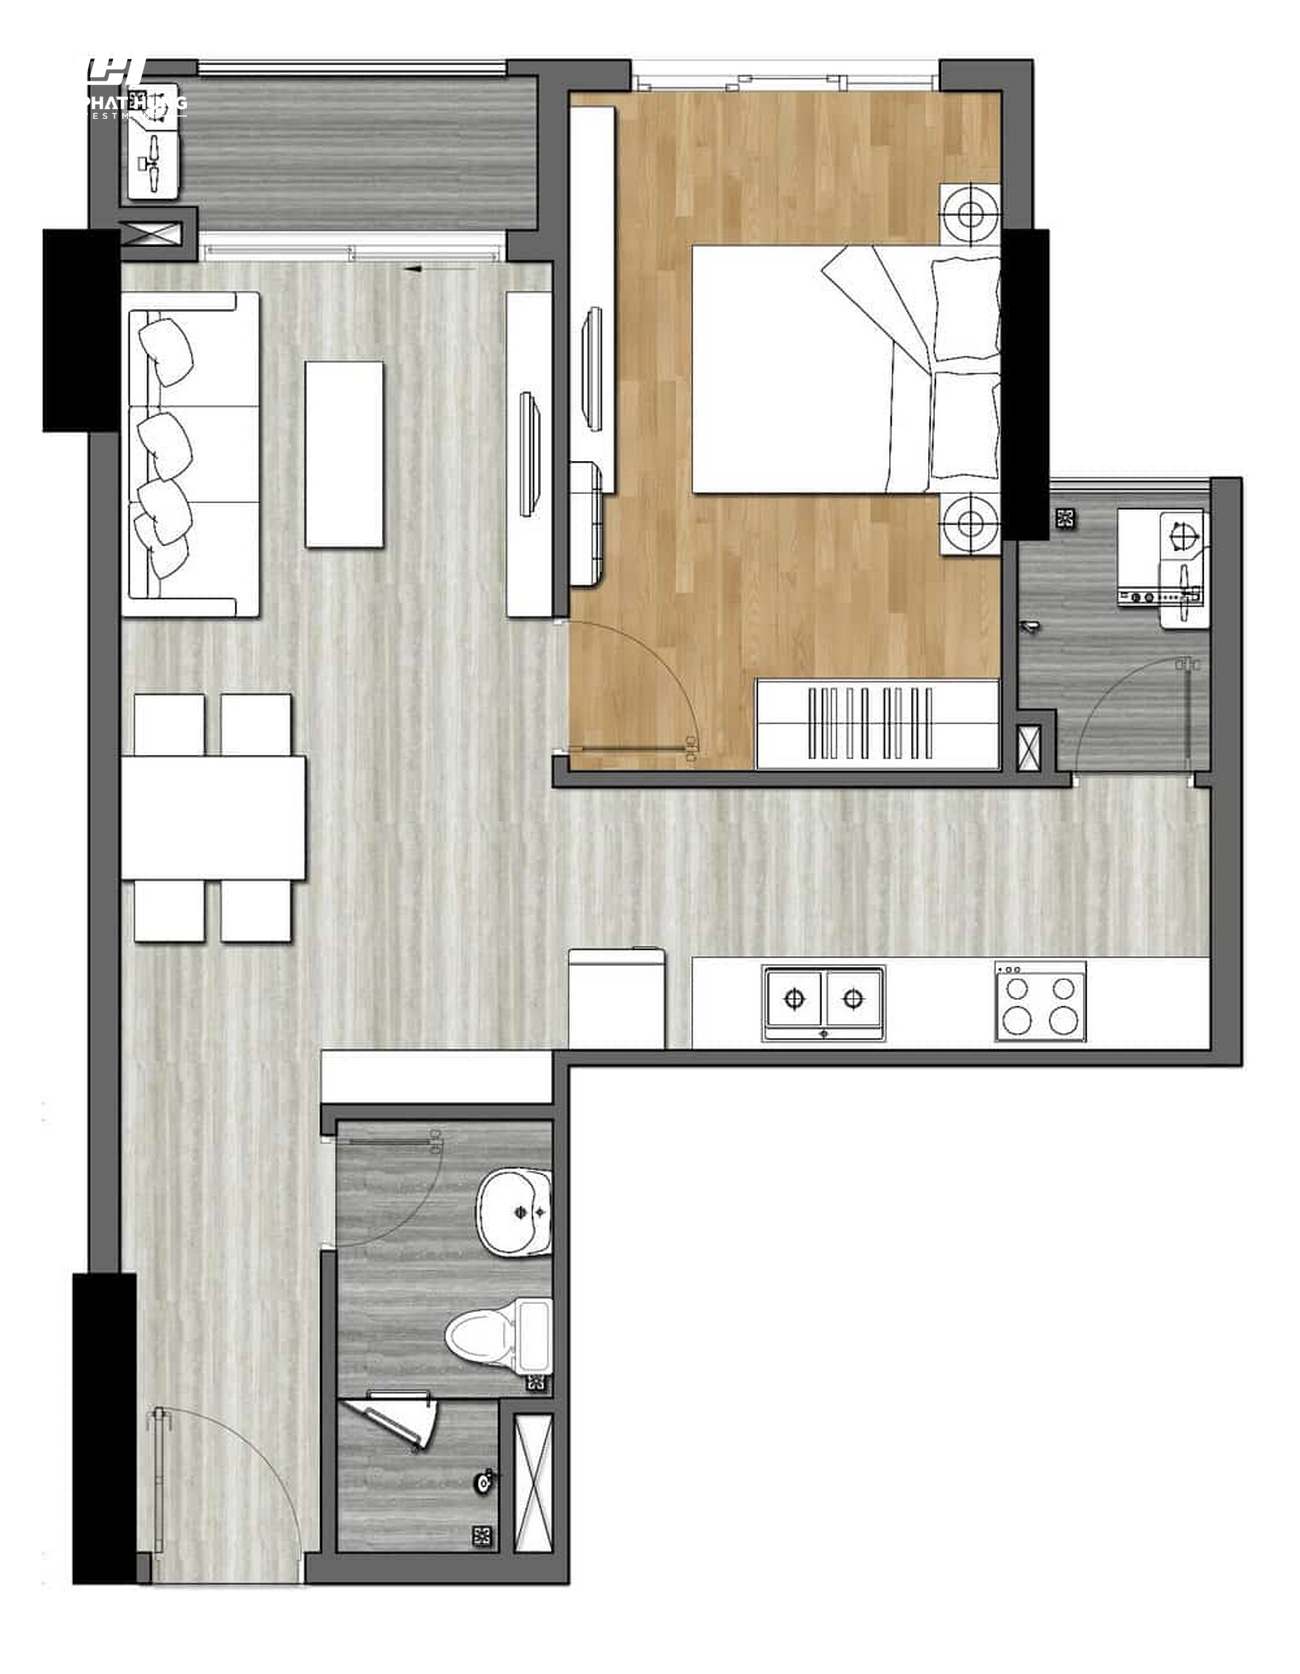 Thiết kế dự án căn hộ chung cư New Galaxy Dĩ An Bình Dương Đường Đường Thống Nhất chủ đầu tư Hưng Thịnh - Loại 1 phòng ngủ